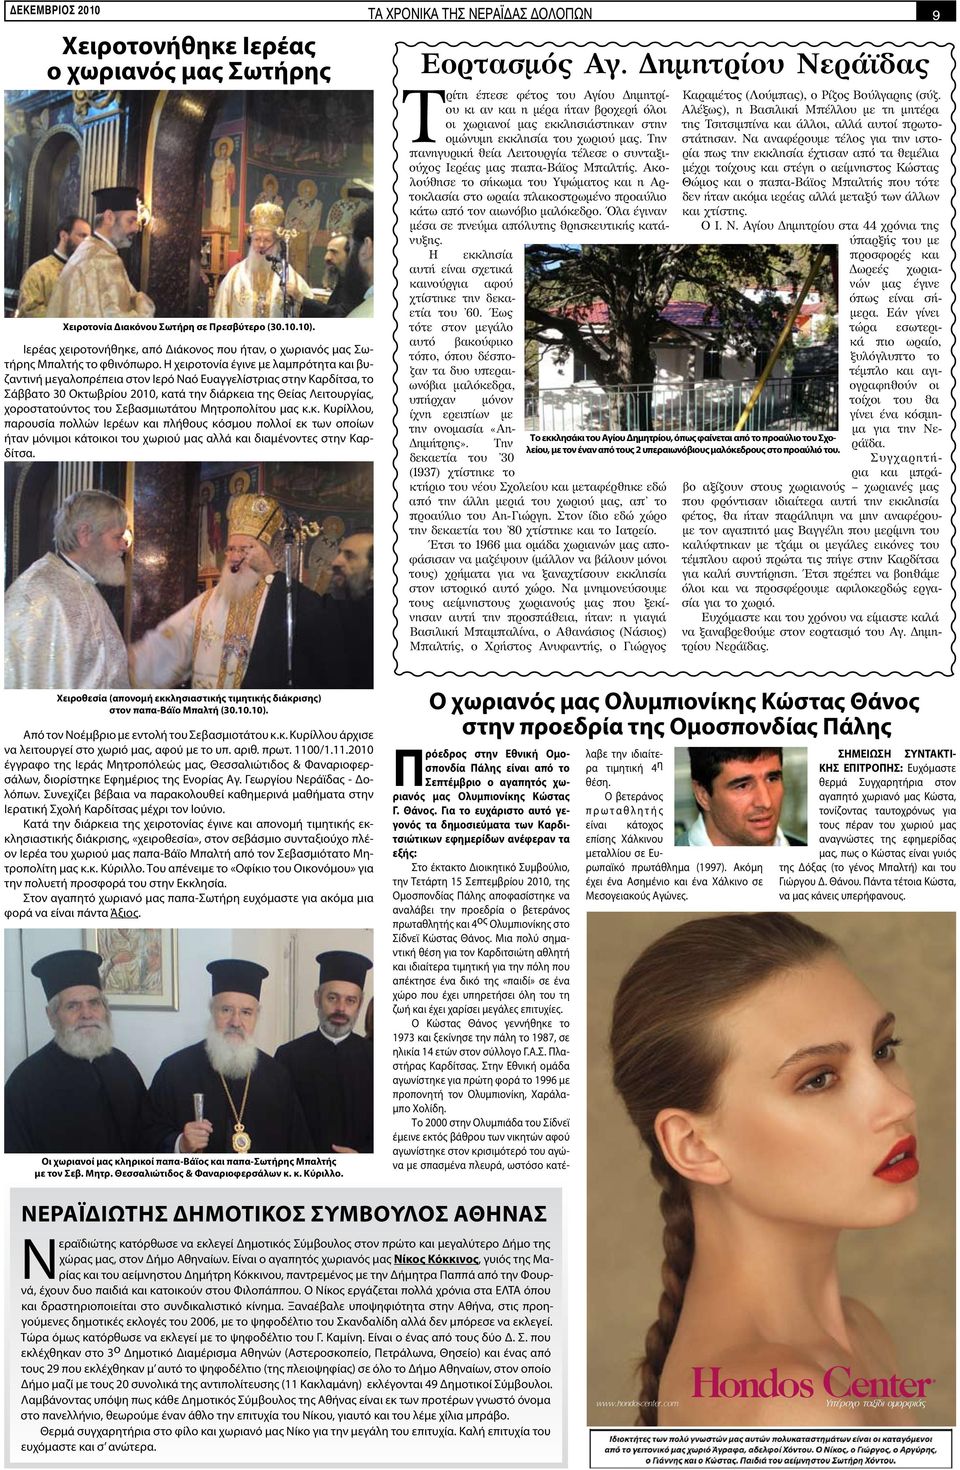 Η χειροτονία έγινε με λαμπρότητα και βυζαντινή μεγαλοπρέπεια στον Ιερό Ναό Ευαγγελίστριας στην Καρδίτσα, το Σάββατο 30 Οκτωβρίου 2010, κατά την διάρκεια της Θείας Λειτουργίας, χοροστατούντος του